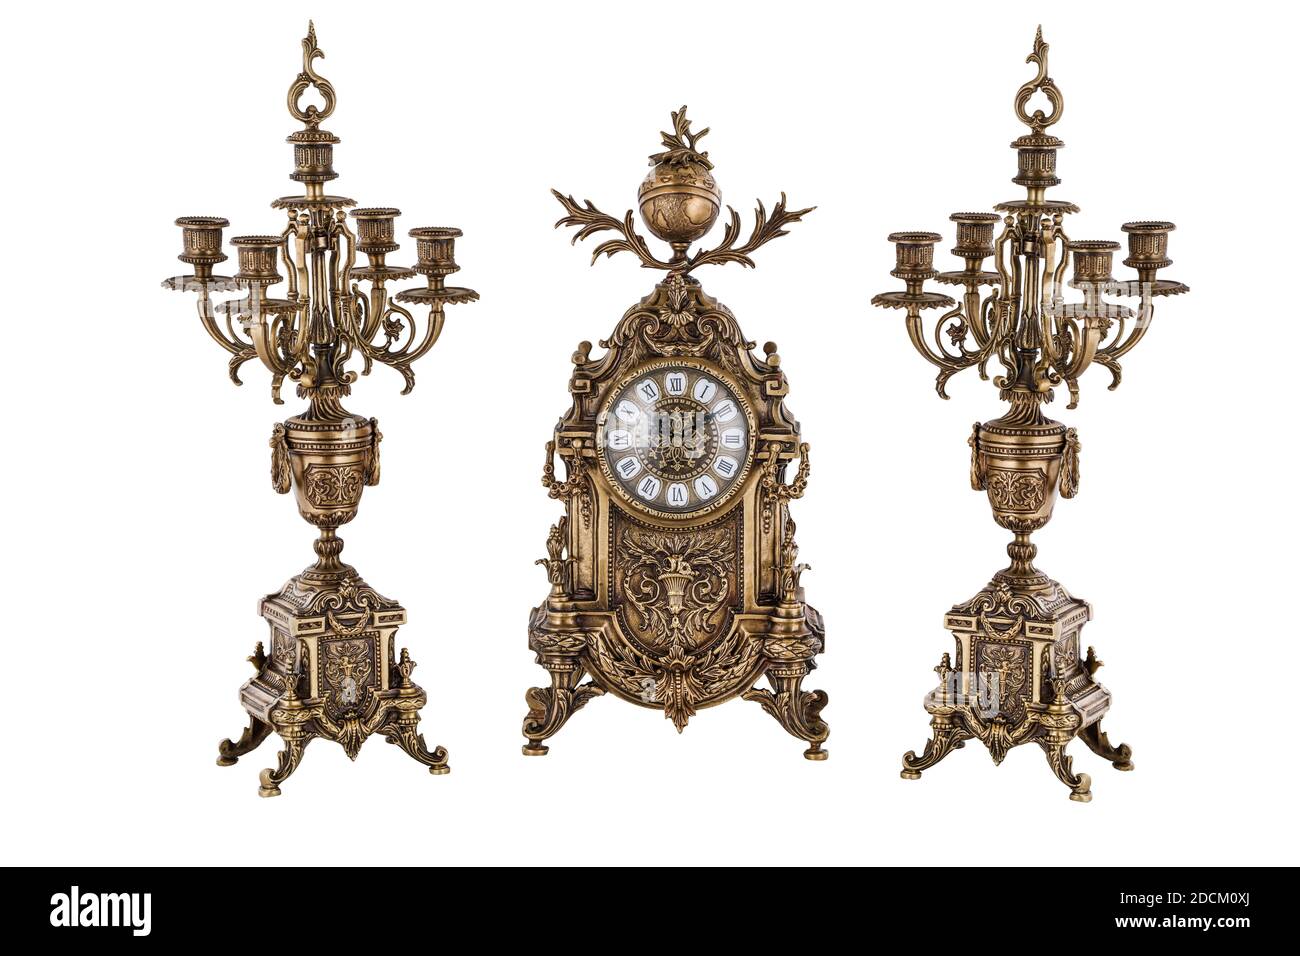 Montre or vintage avec candélabre sur fond blanc, horloge et candélabre en bronze, chandeliers et horloge en or, horloge et chandeliers anciens, vint Banque D'Images